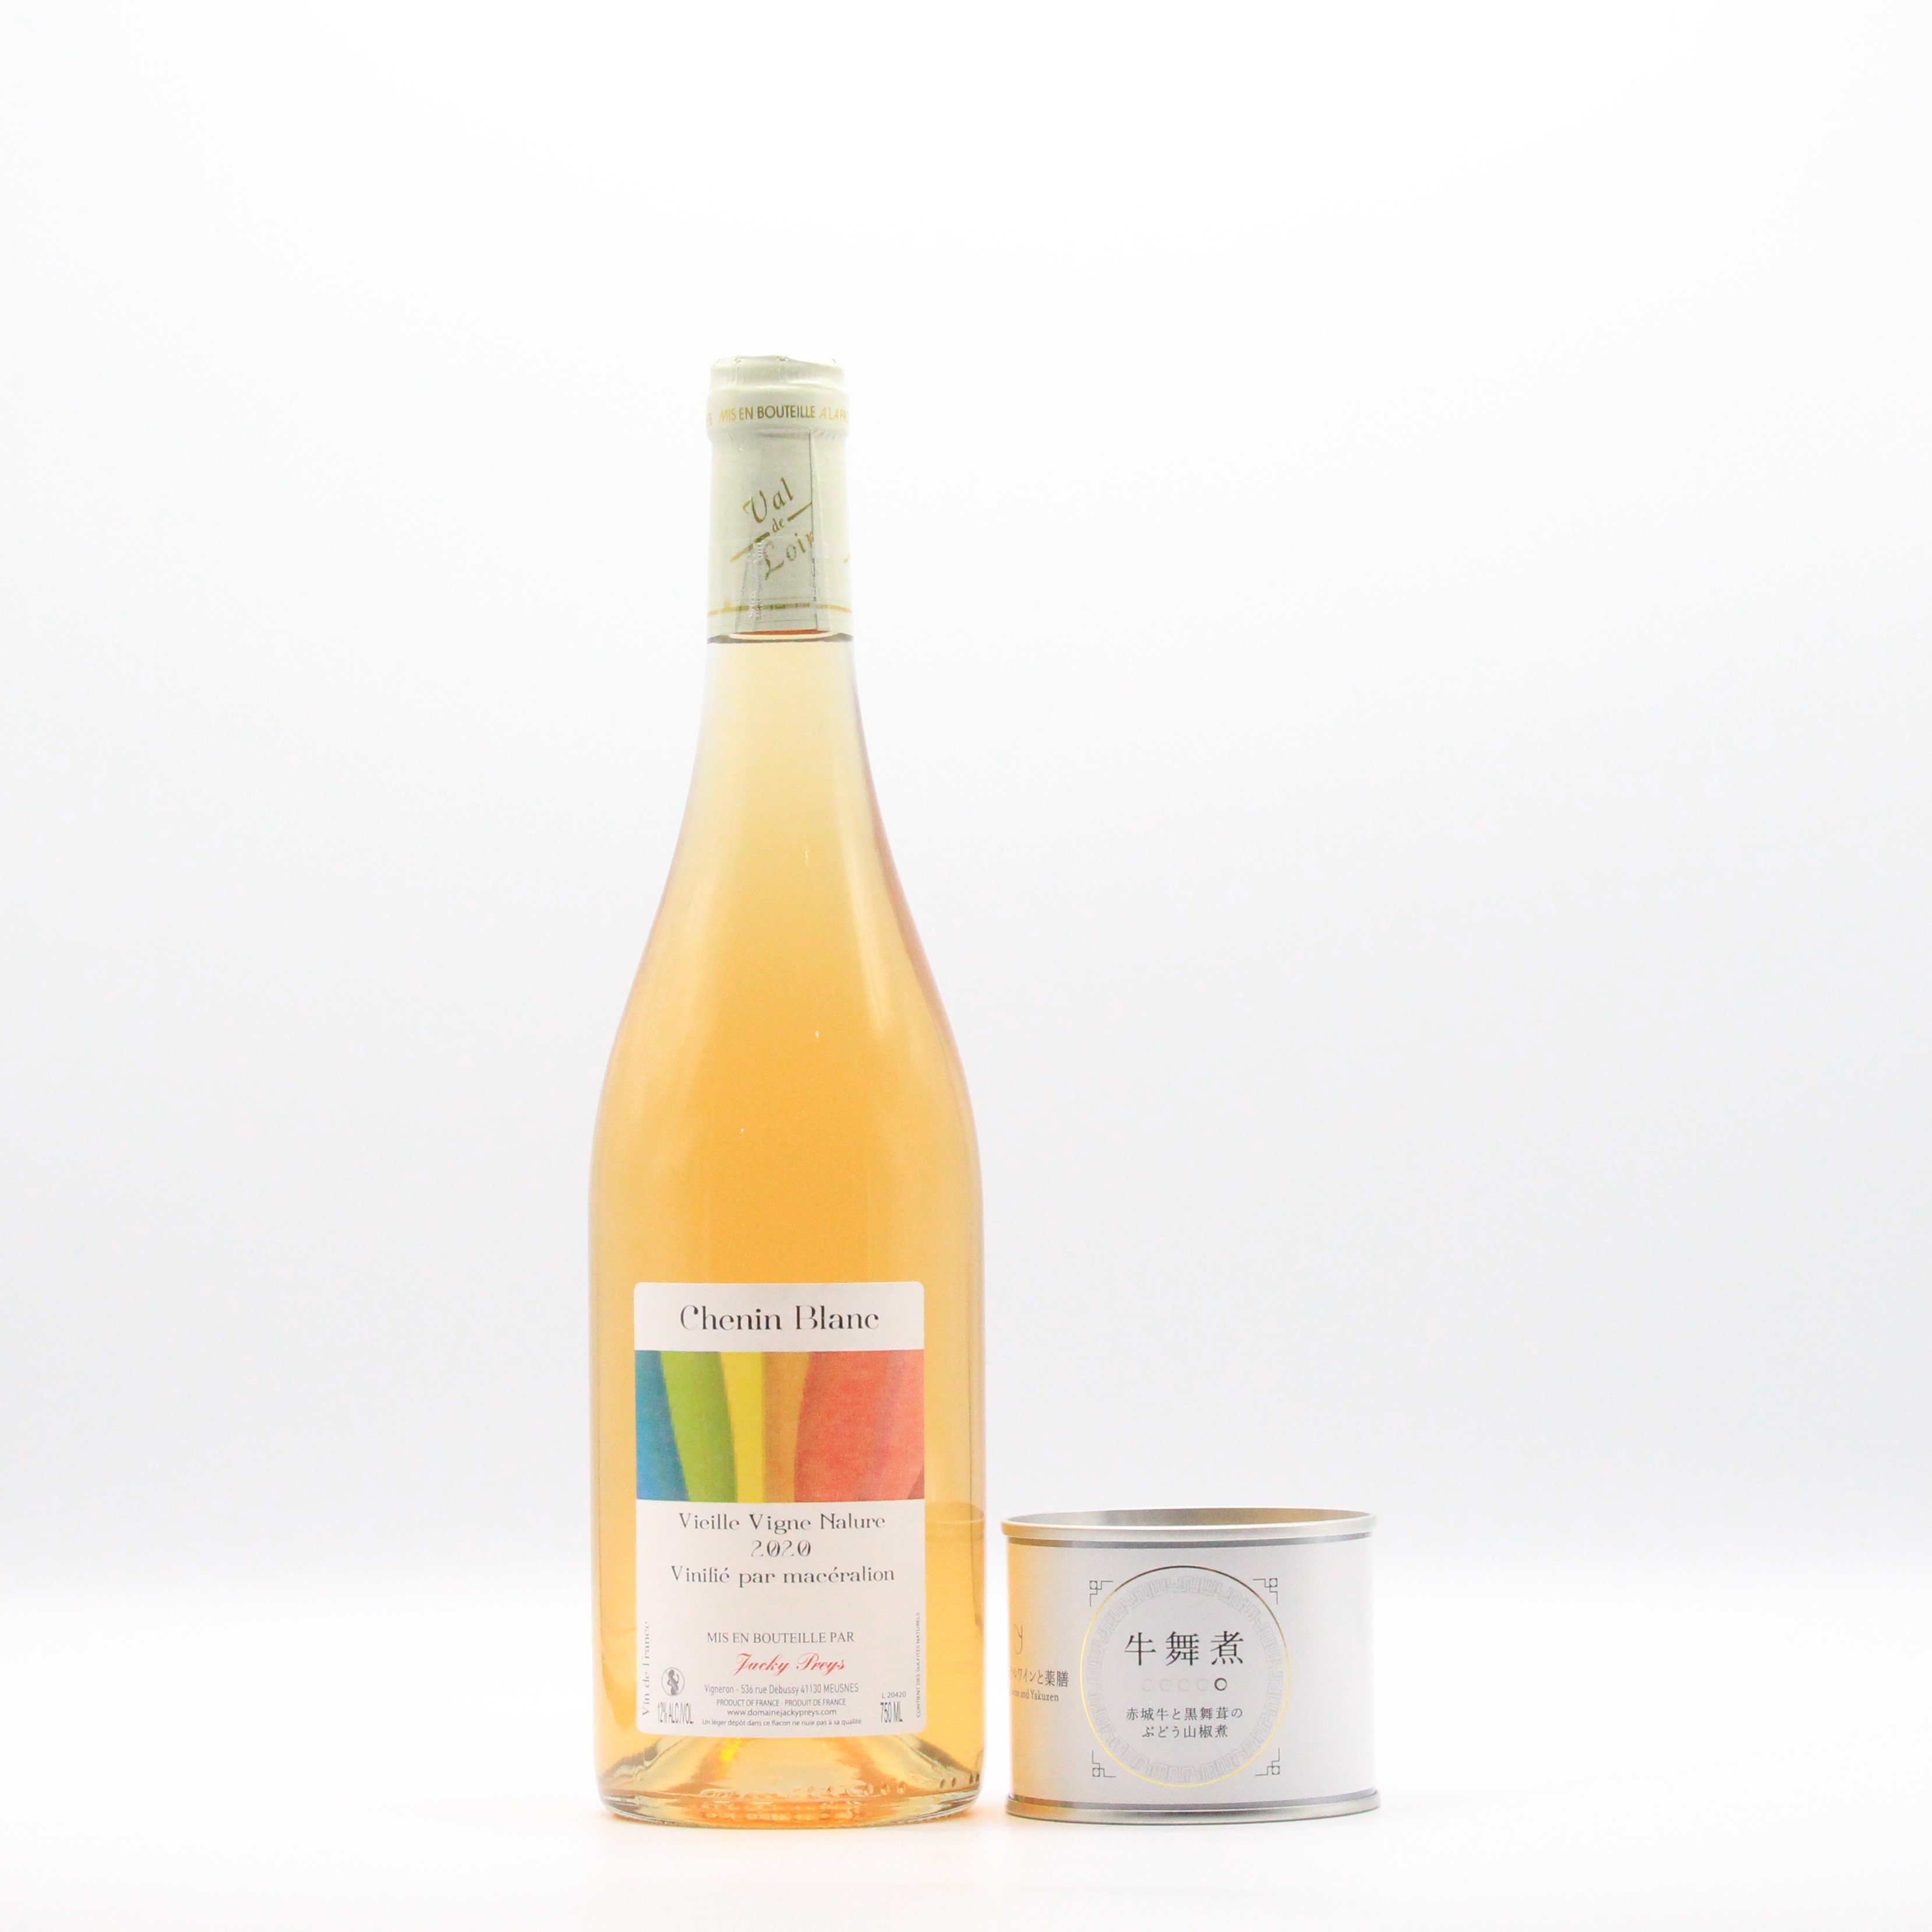 オレンジワイン「シュナン・マセラシオン」750ml×1本と薬膳缶詰「牛舞煮」190g×1缶のセット